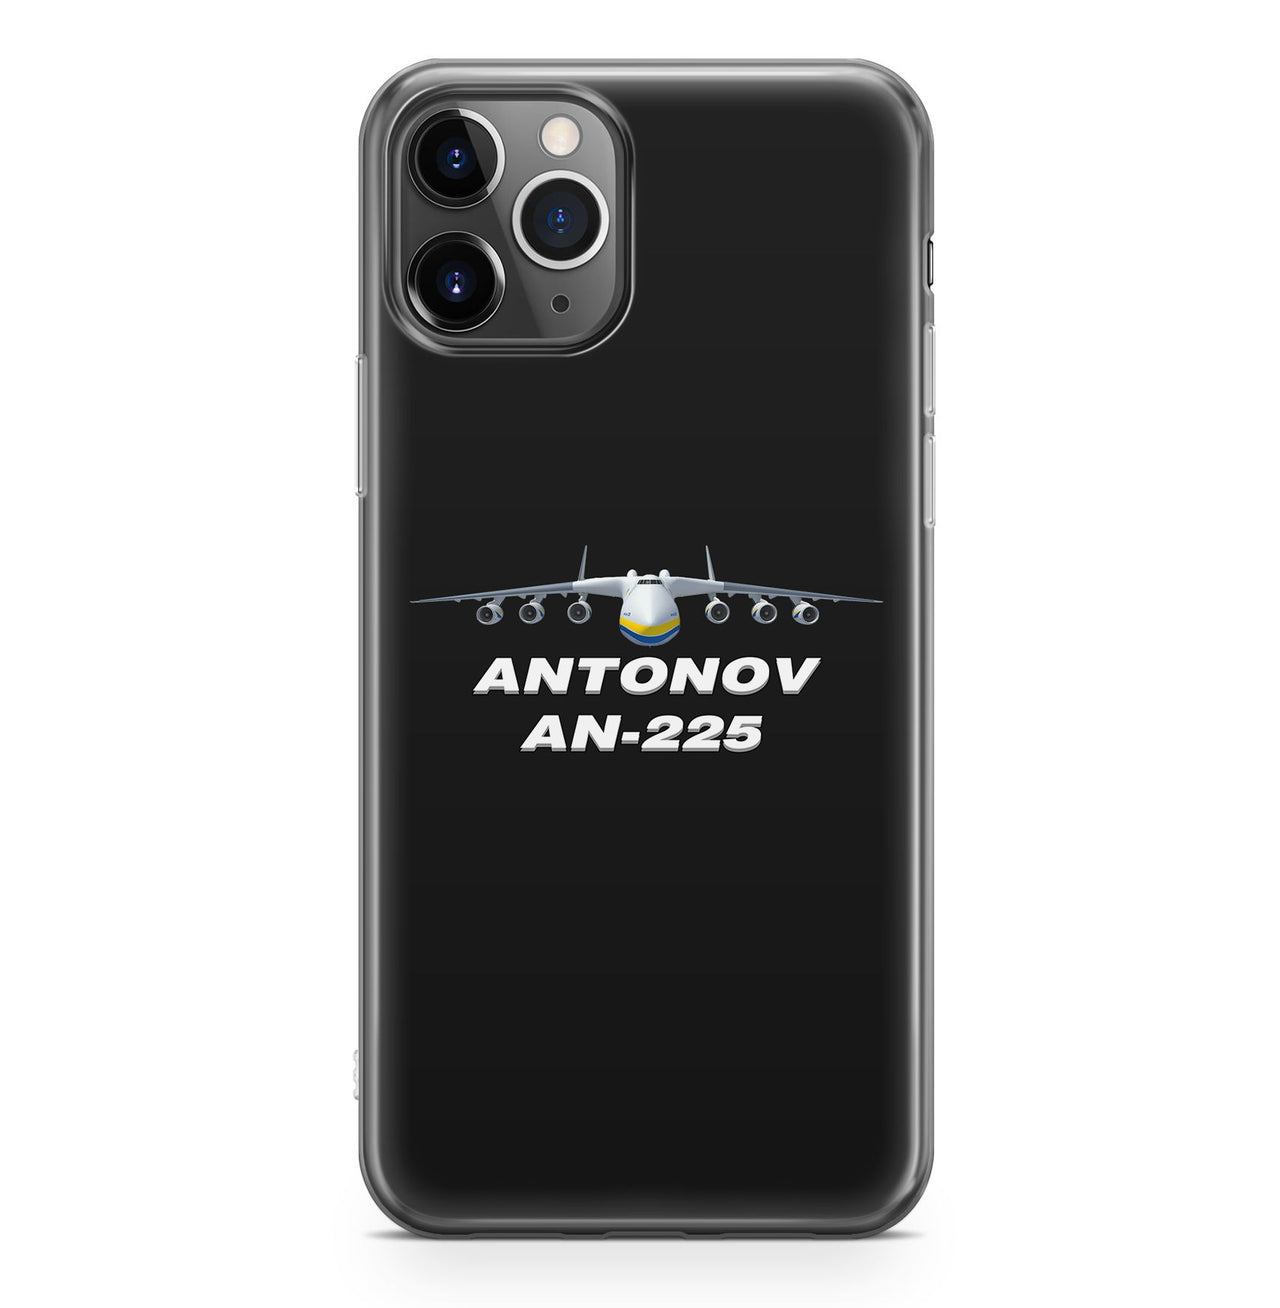 Antonov AN-225 (16) Designed iPhone Cases